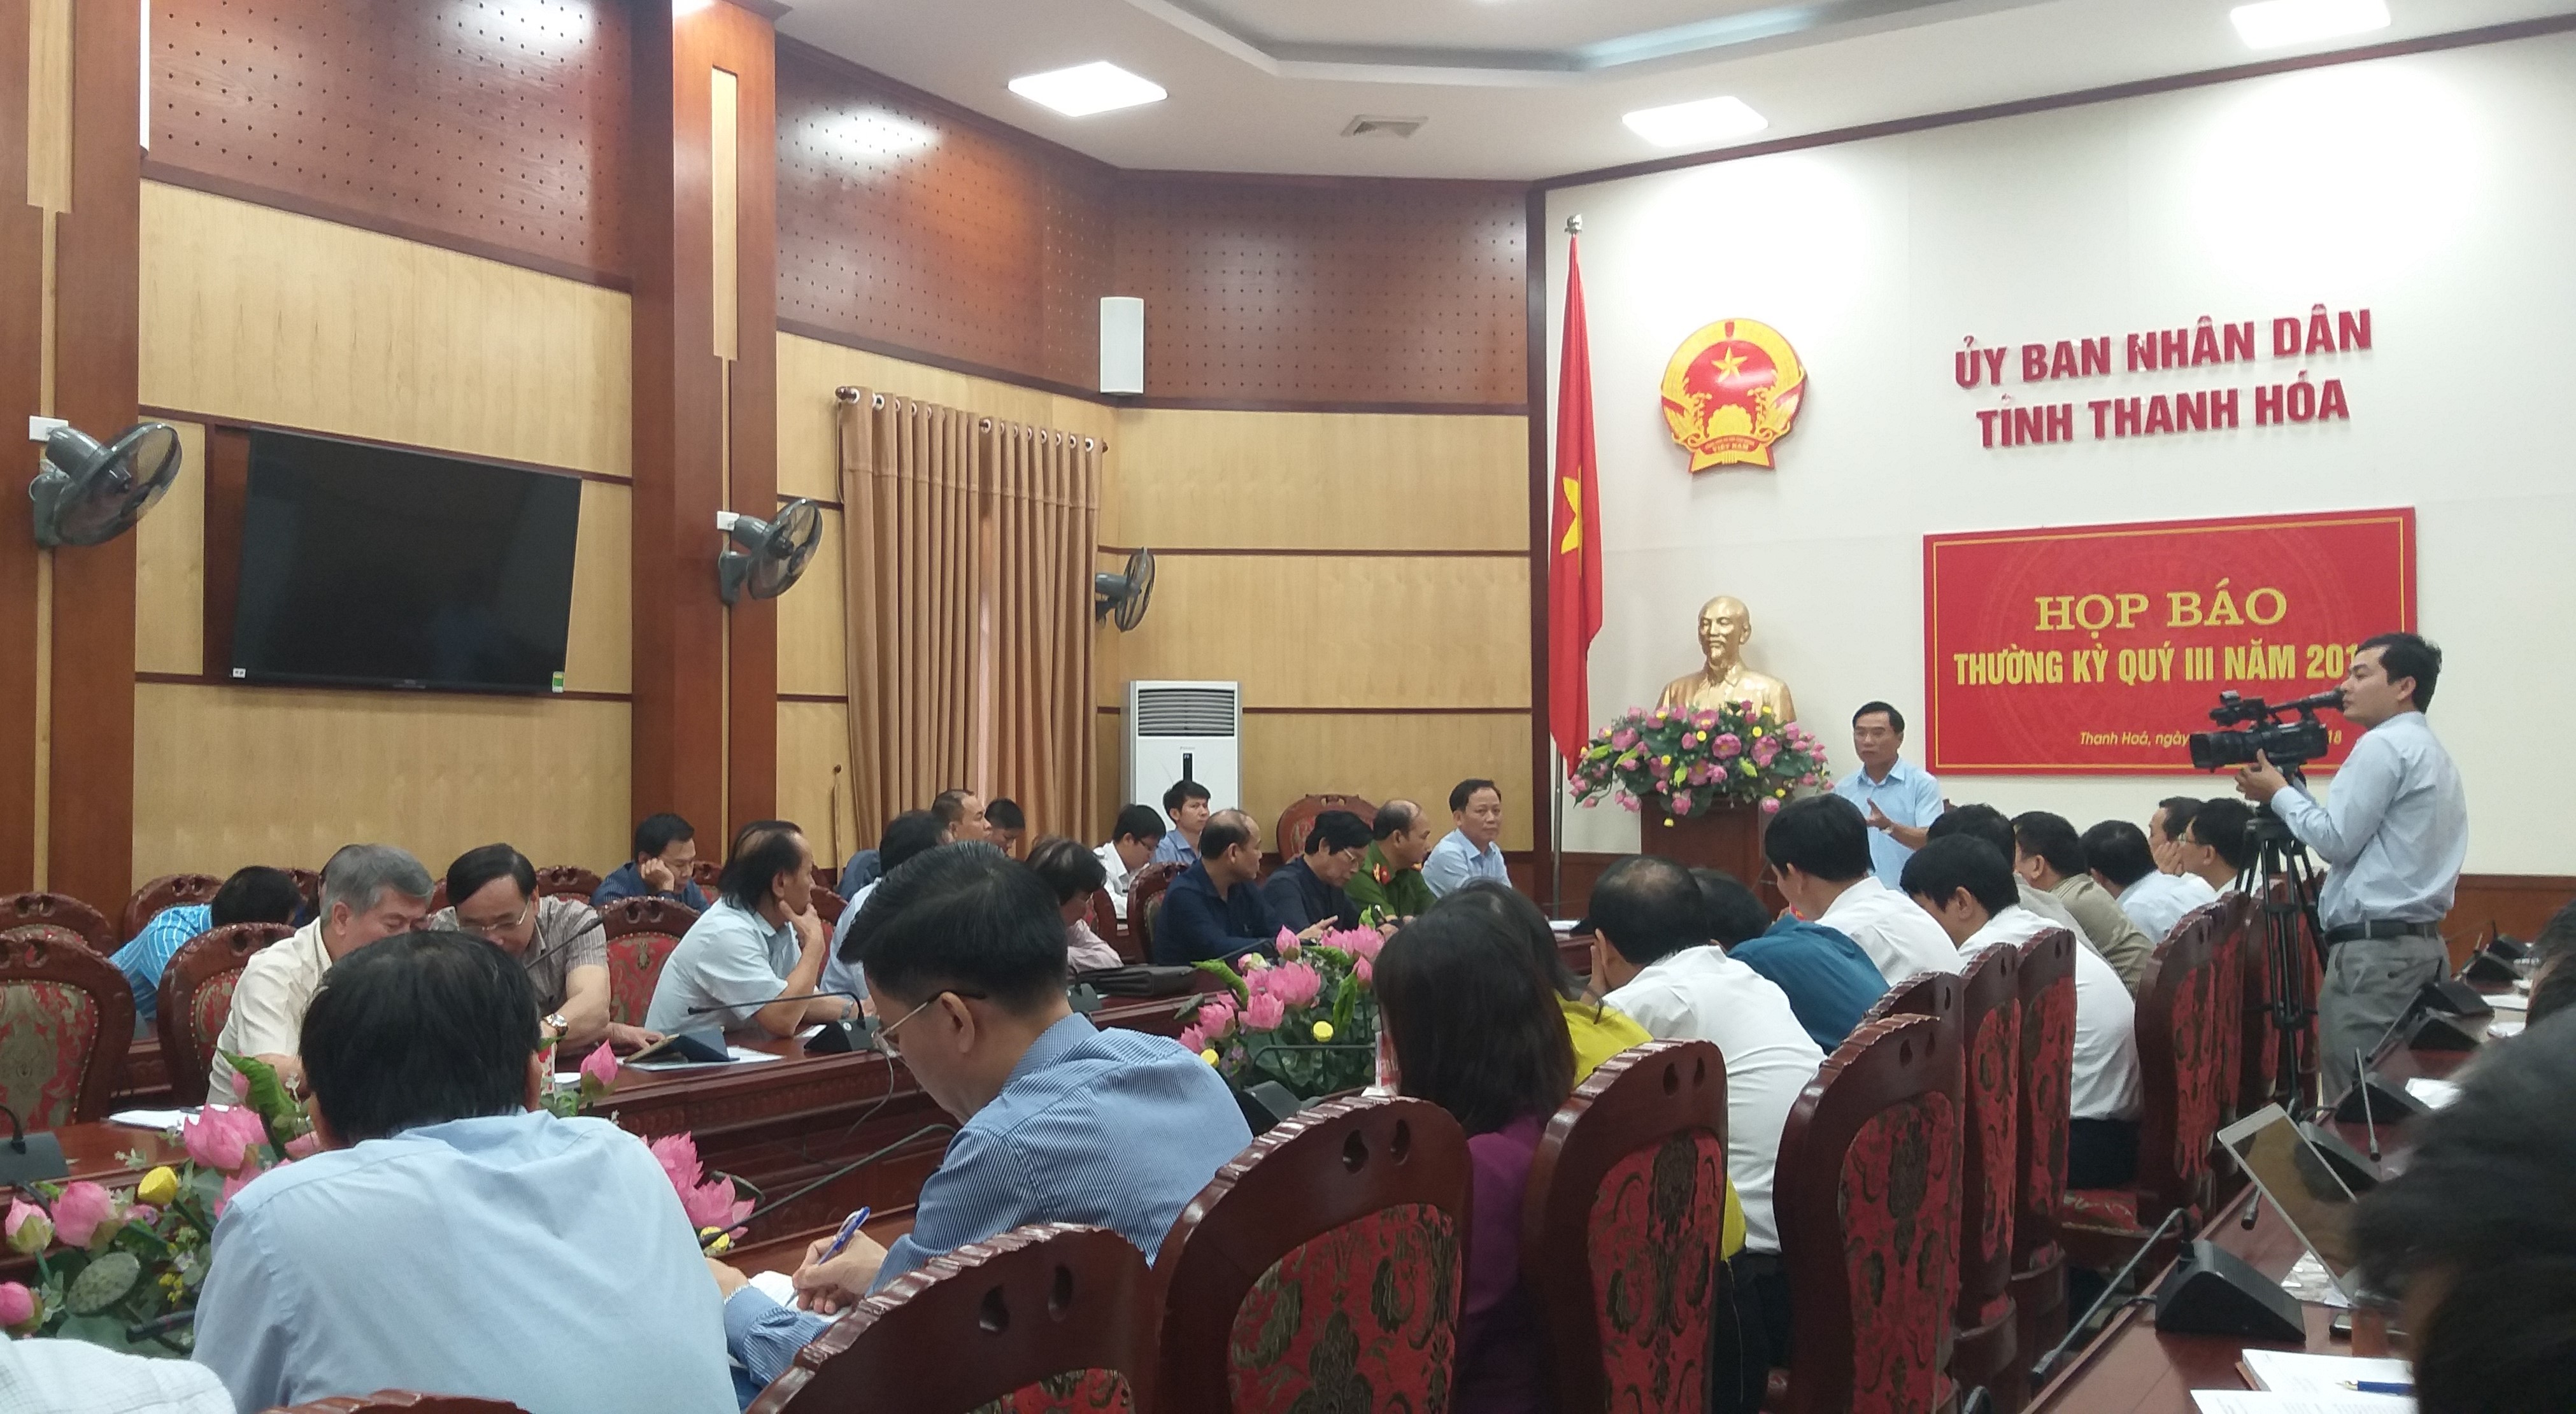 Tại cuộc họp báo thường kỳ quý III/2018 của UBND tỉnh Thanh Hóa. (Ảnh tư liệu của An Nguyên), ông Phạm Đăng Quyền